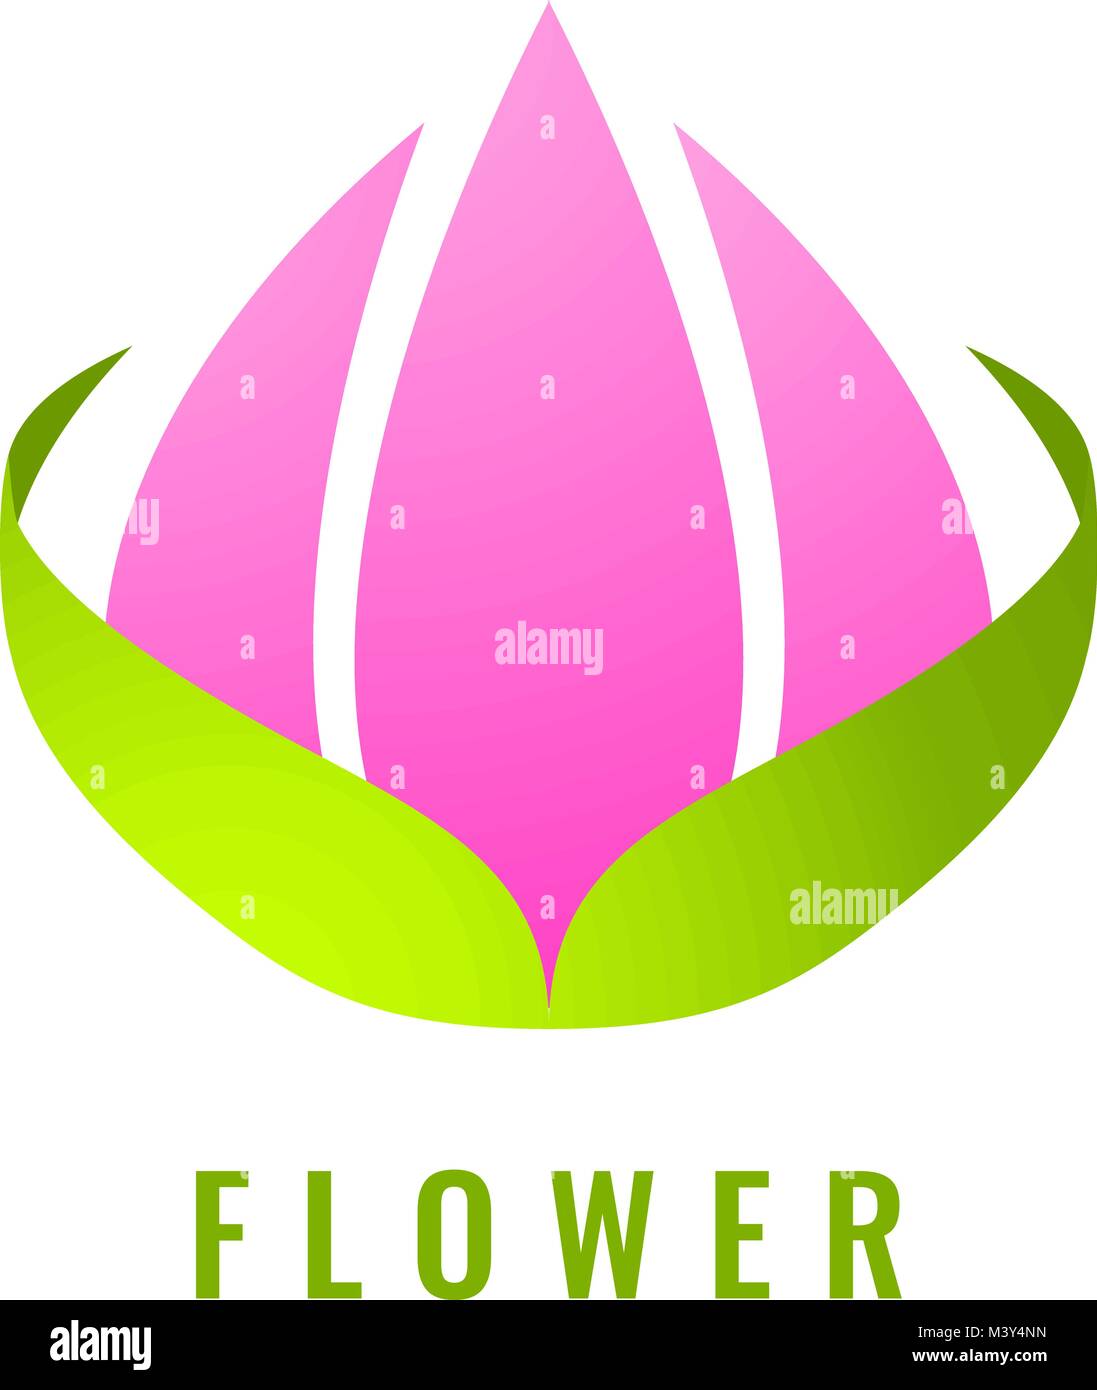 Abstract fleur stylisée modèle de conception de logo. Le yoga et spa beauté concept studio vecteur logotype signe isolé. L'été ou printemps fleurs organiques symbo Illustration de Vecteur